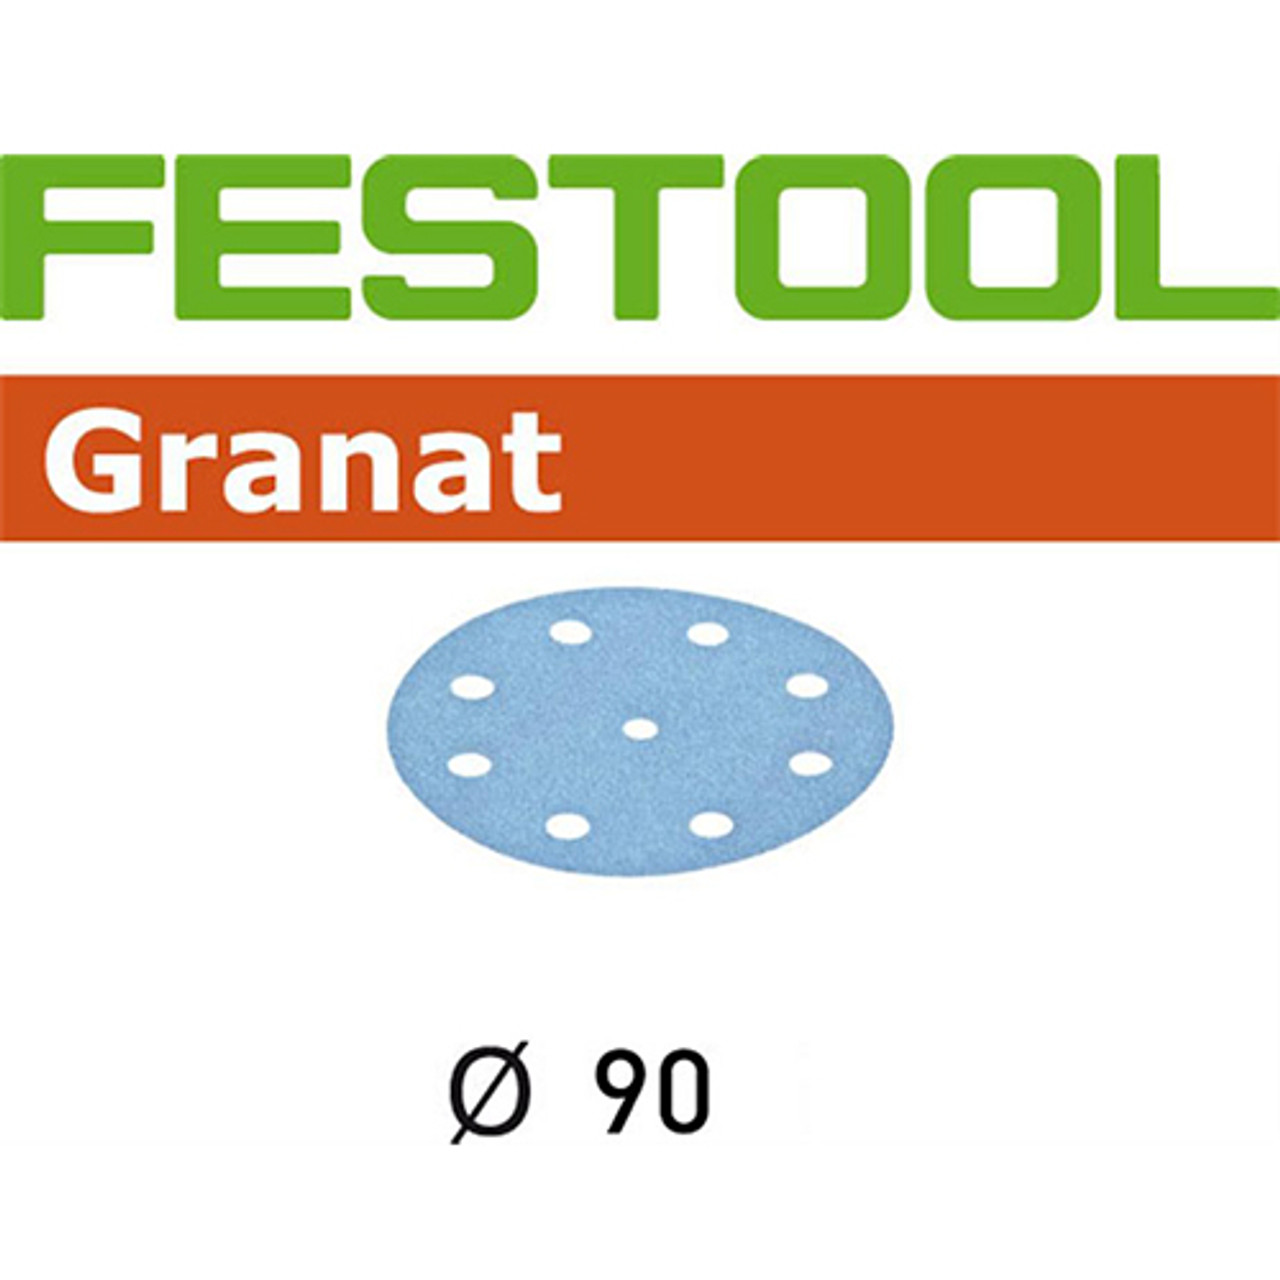 Festool RO90, 100 Grit, Granat Sanding Discs, 100PK